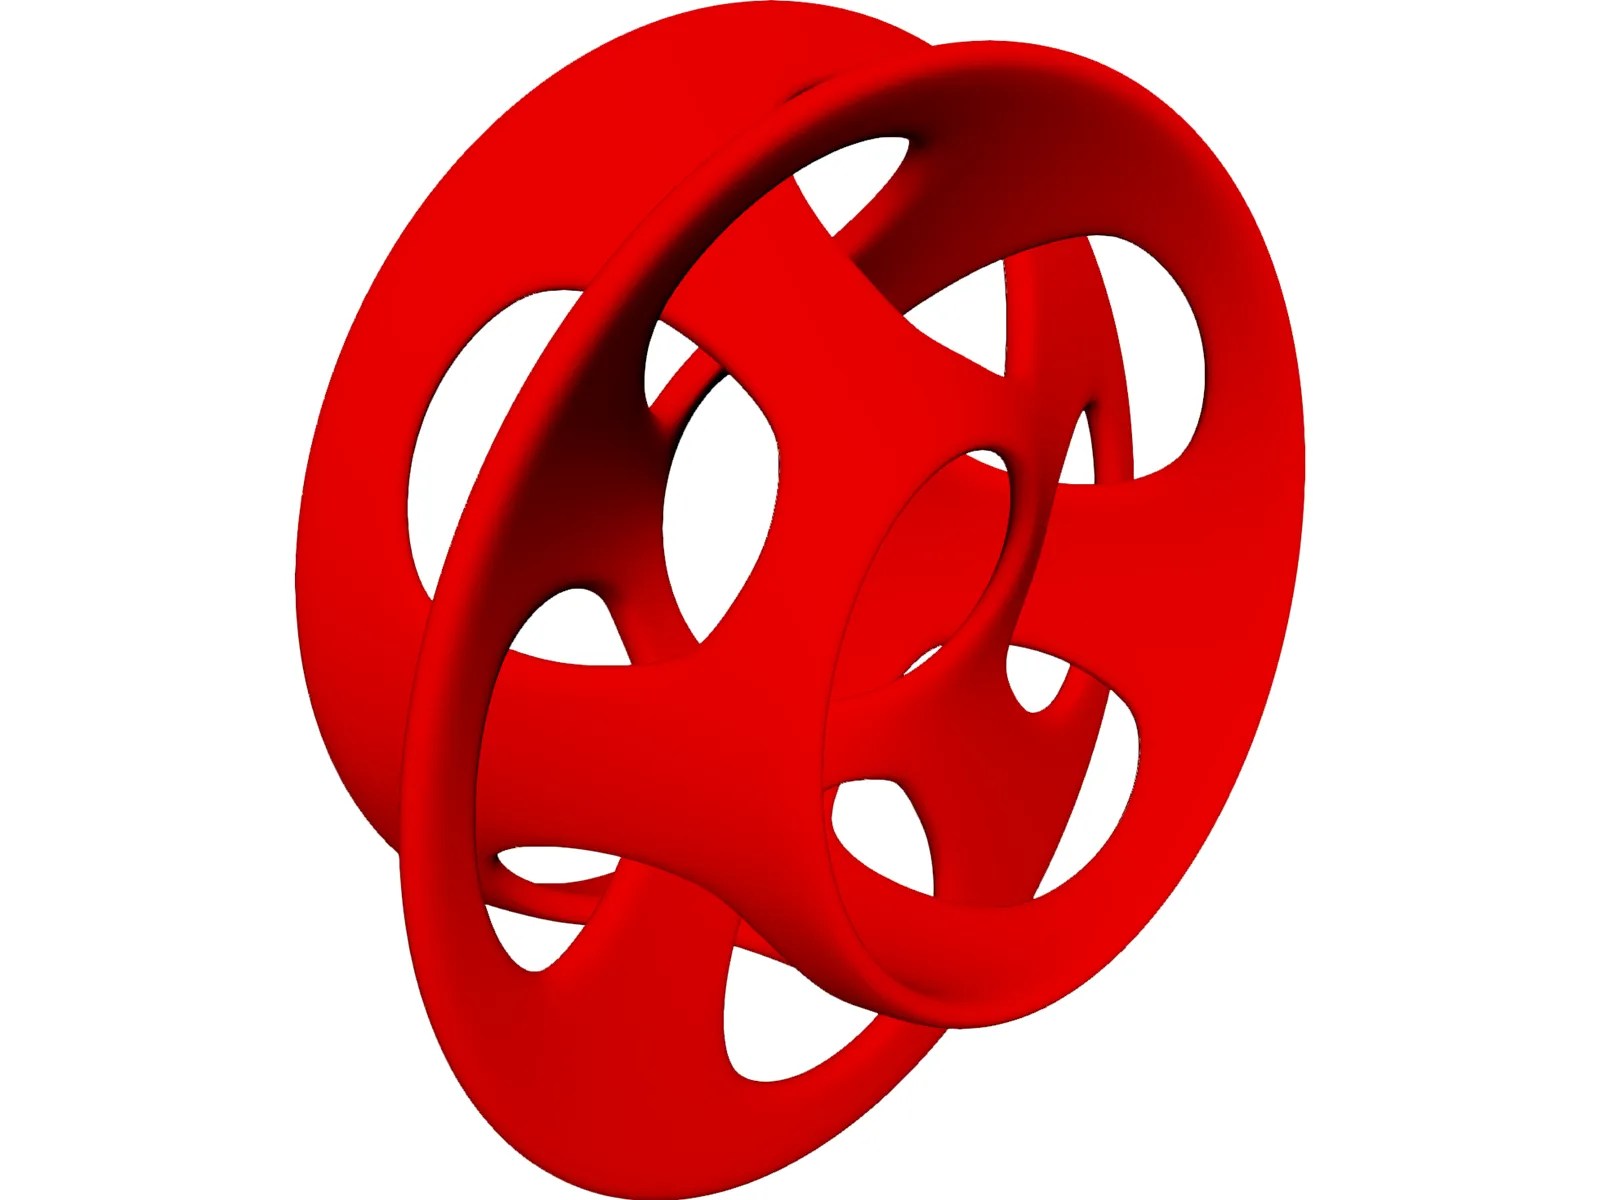 Moebius Strip 3D Model